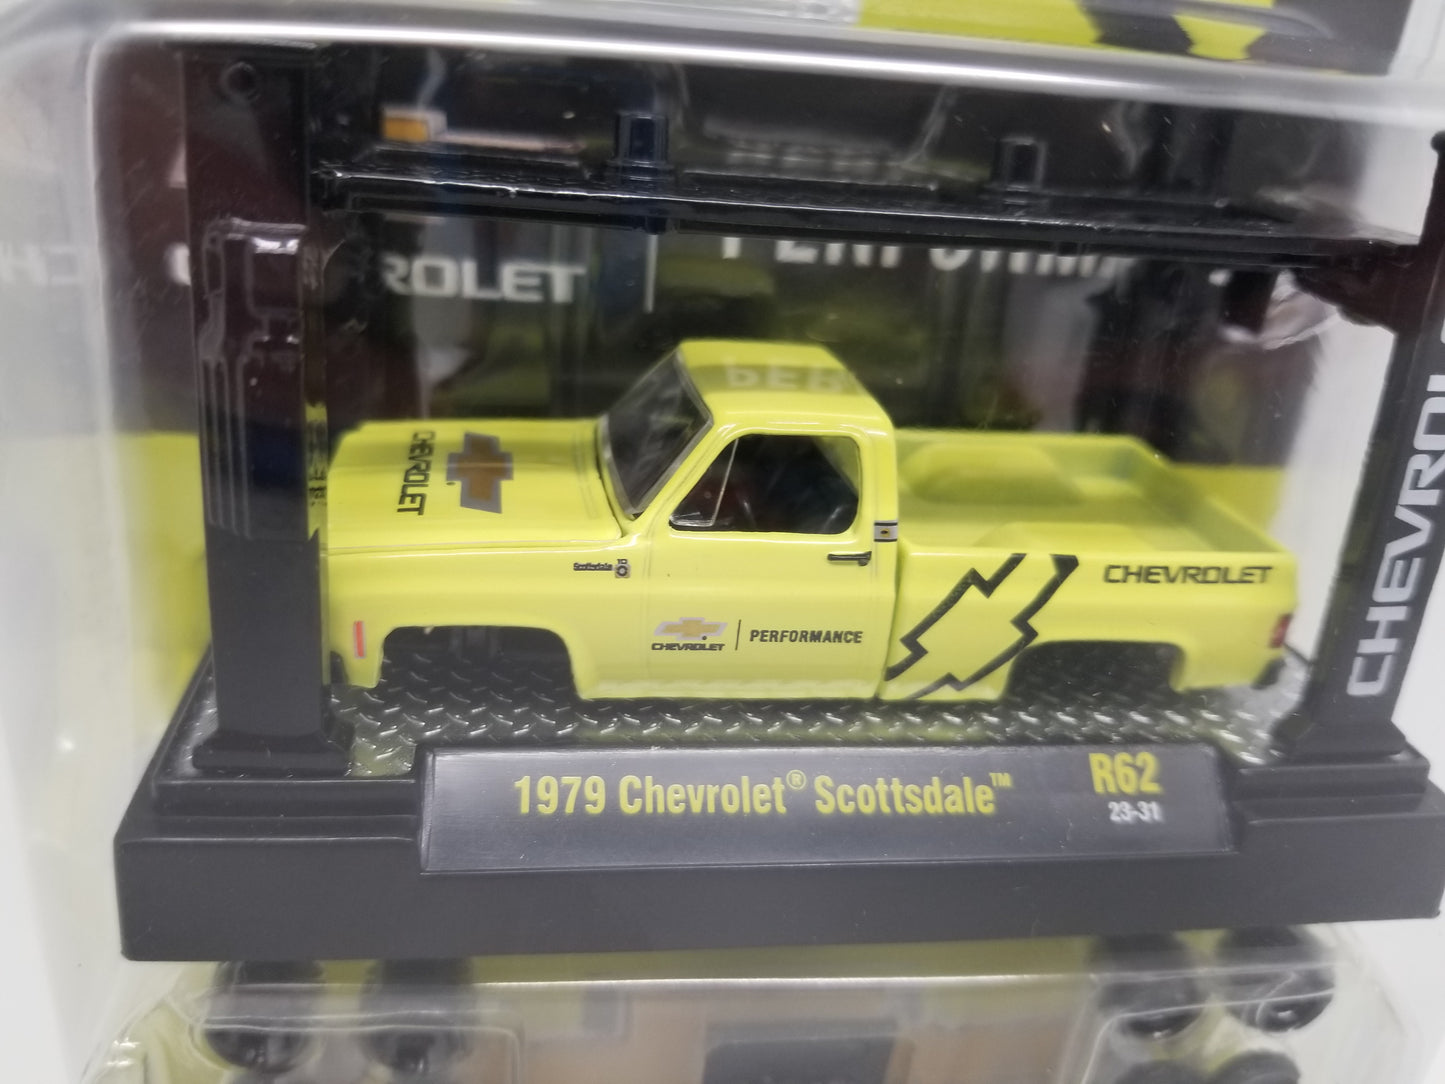 M2 1979 Chevrolet Scottsdale Truck Model Kit